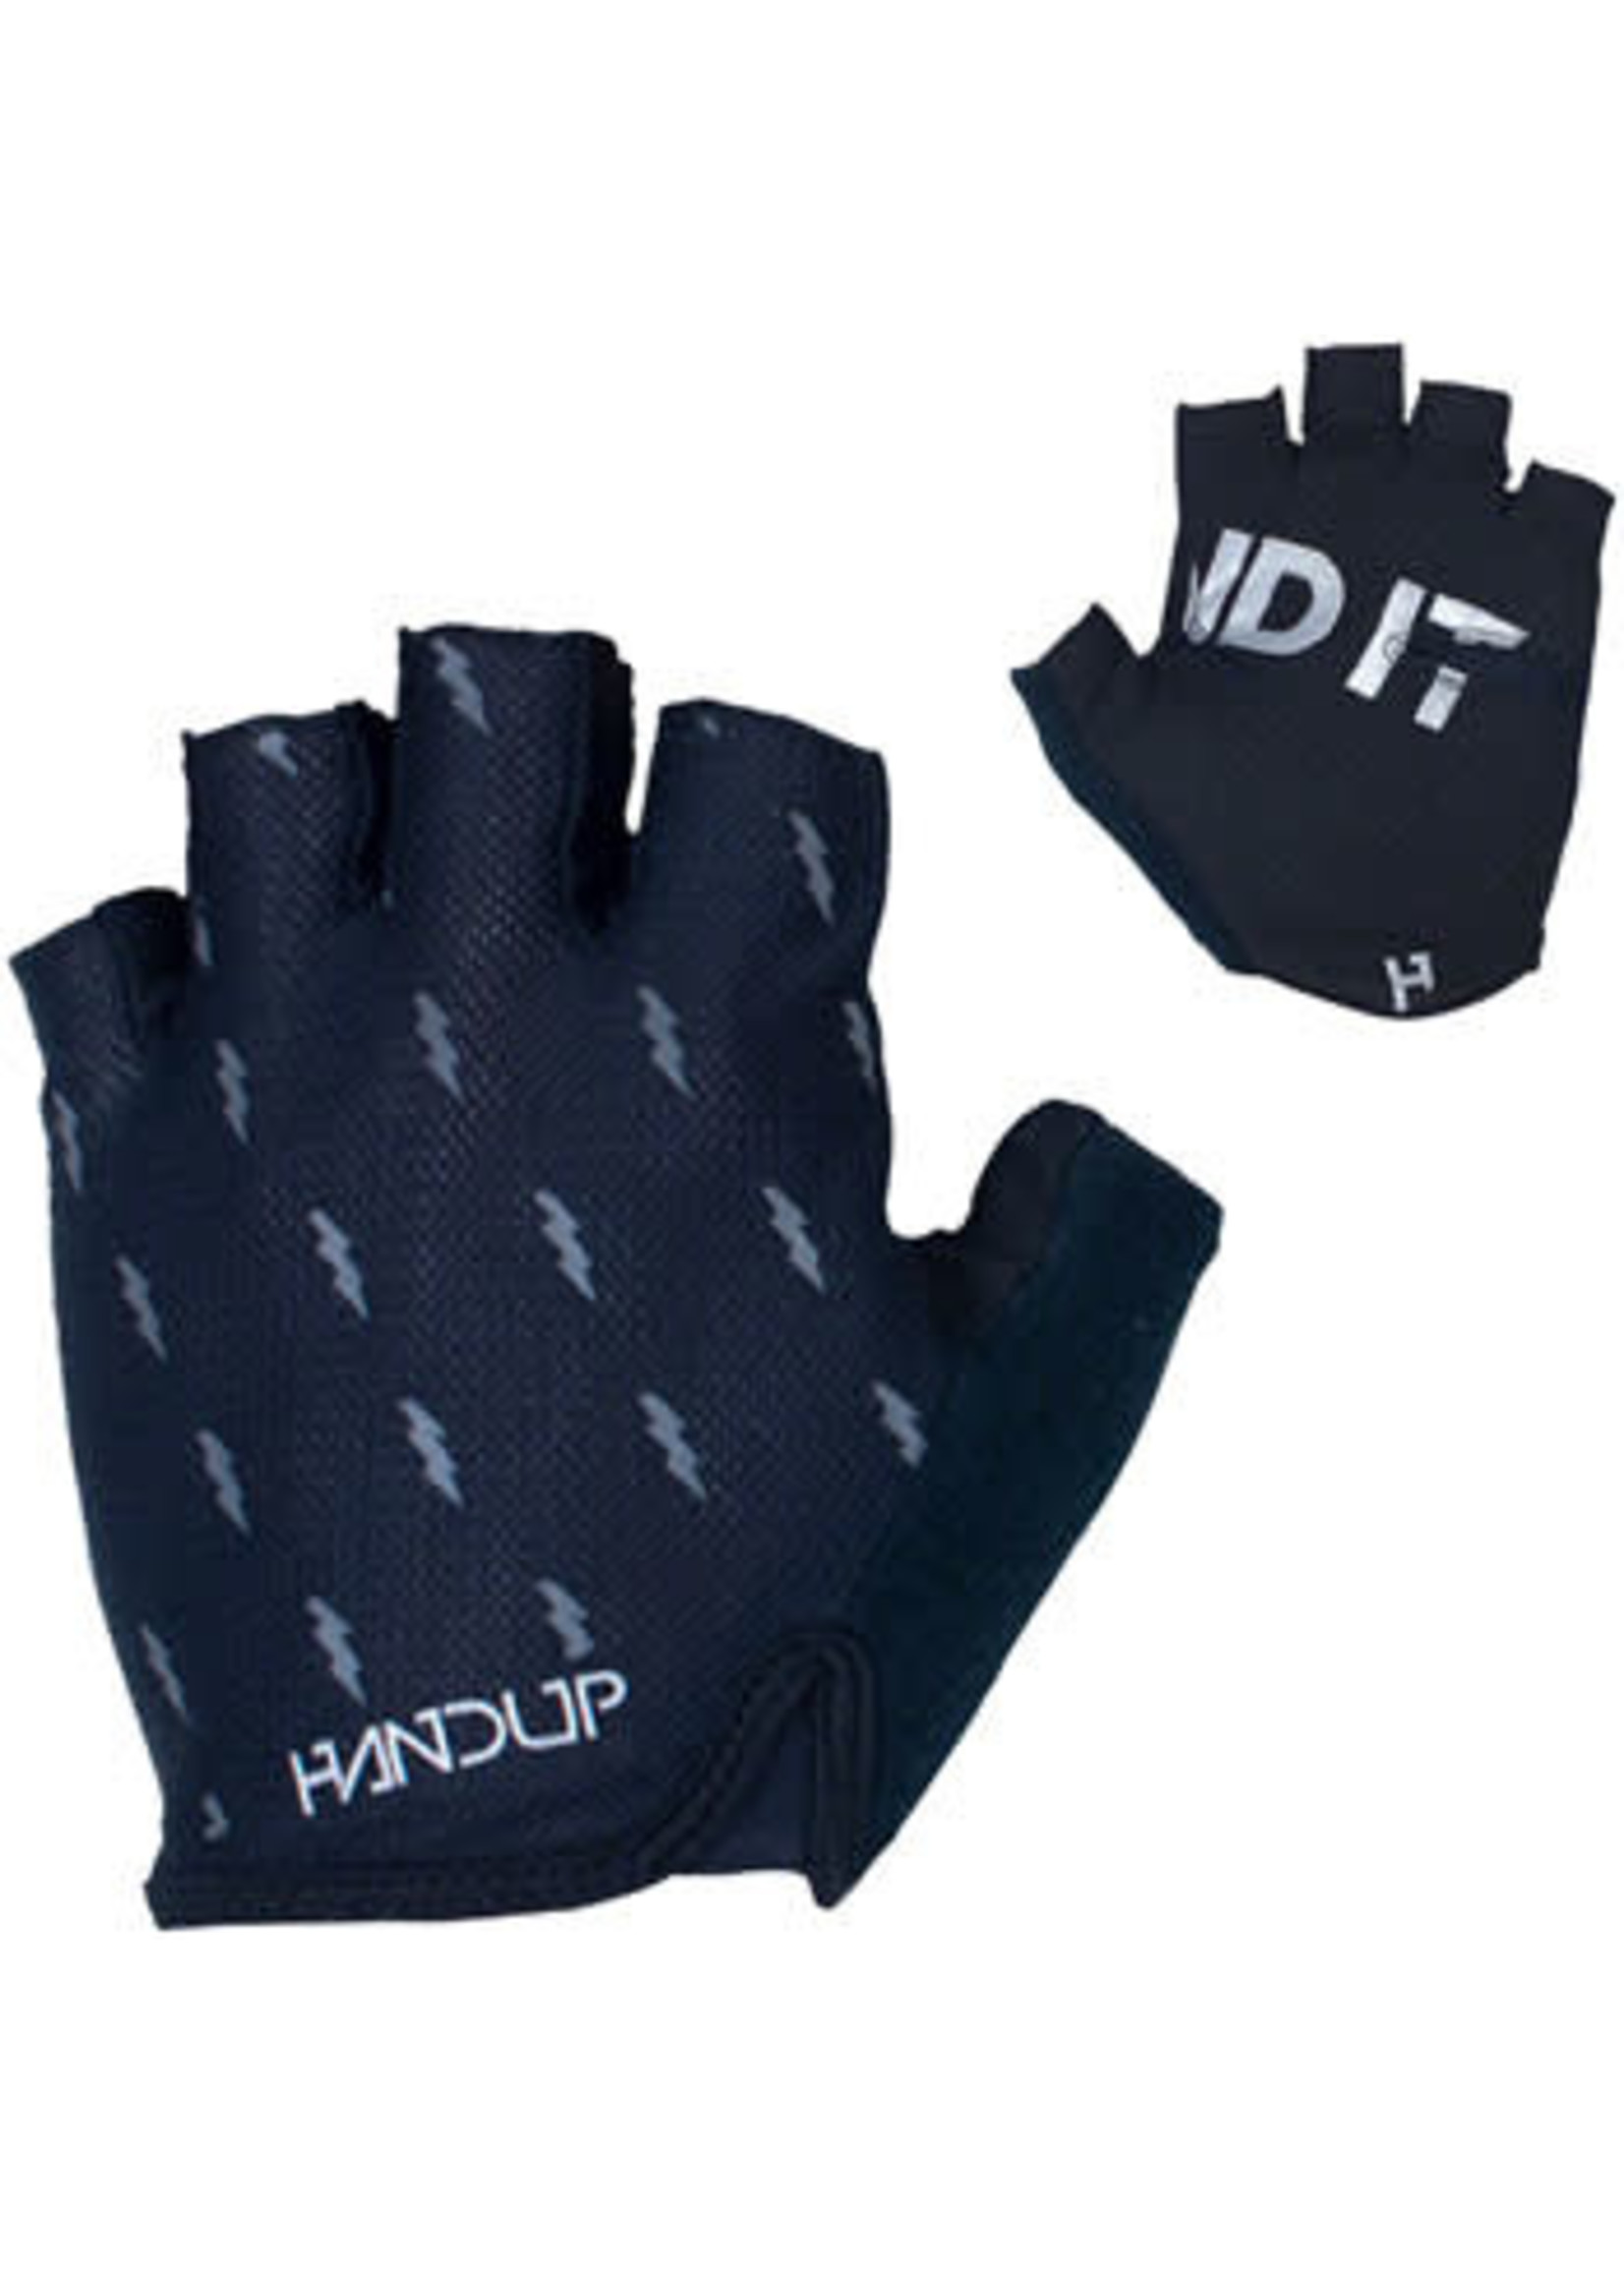 Handup Handup Shorties Glove - Blackout Bolts Short Finger Large